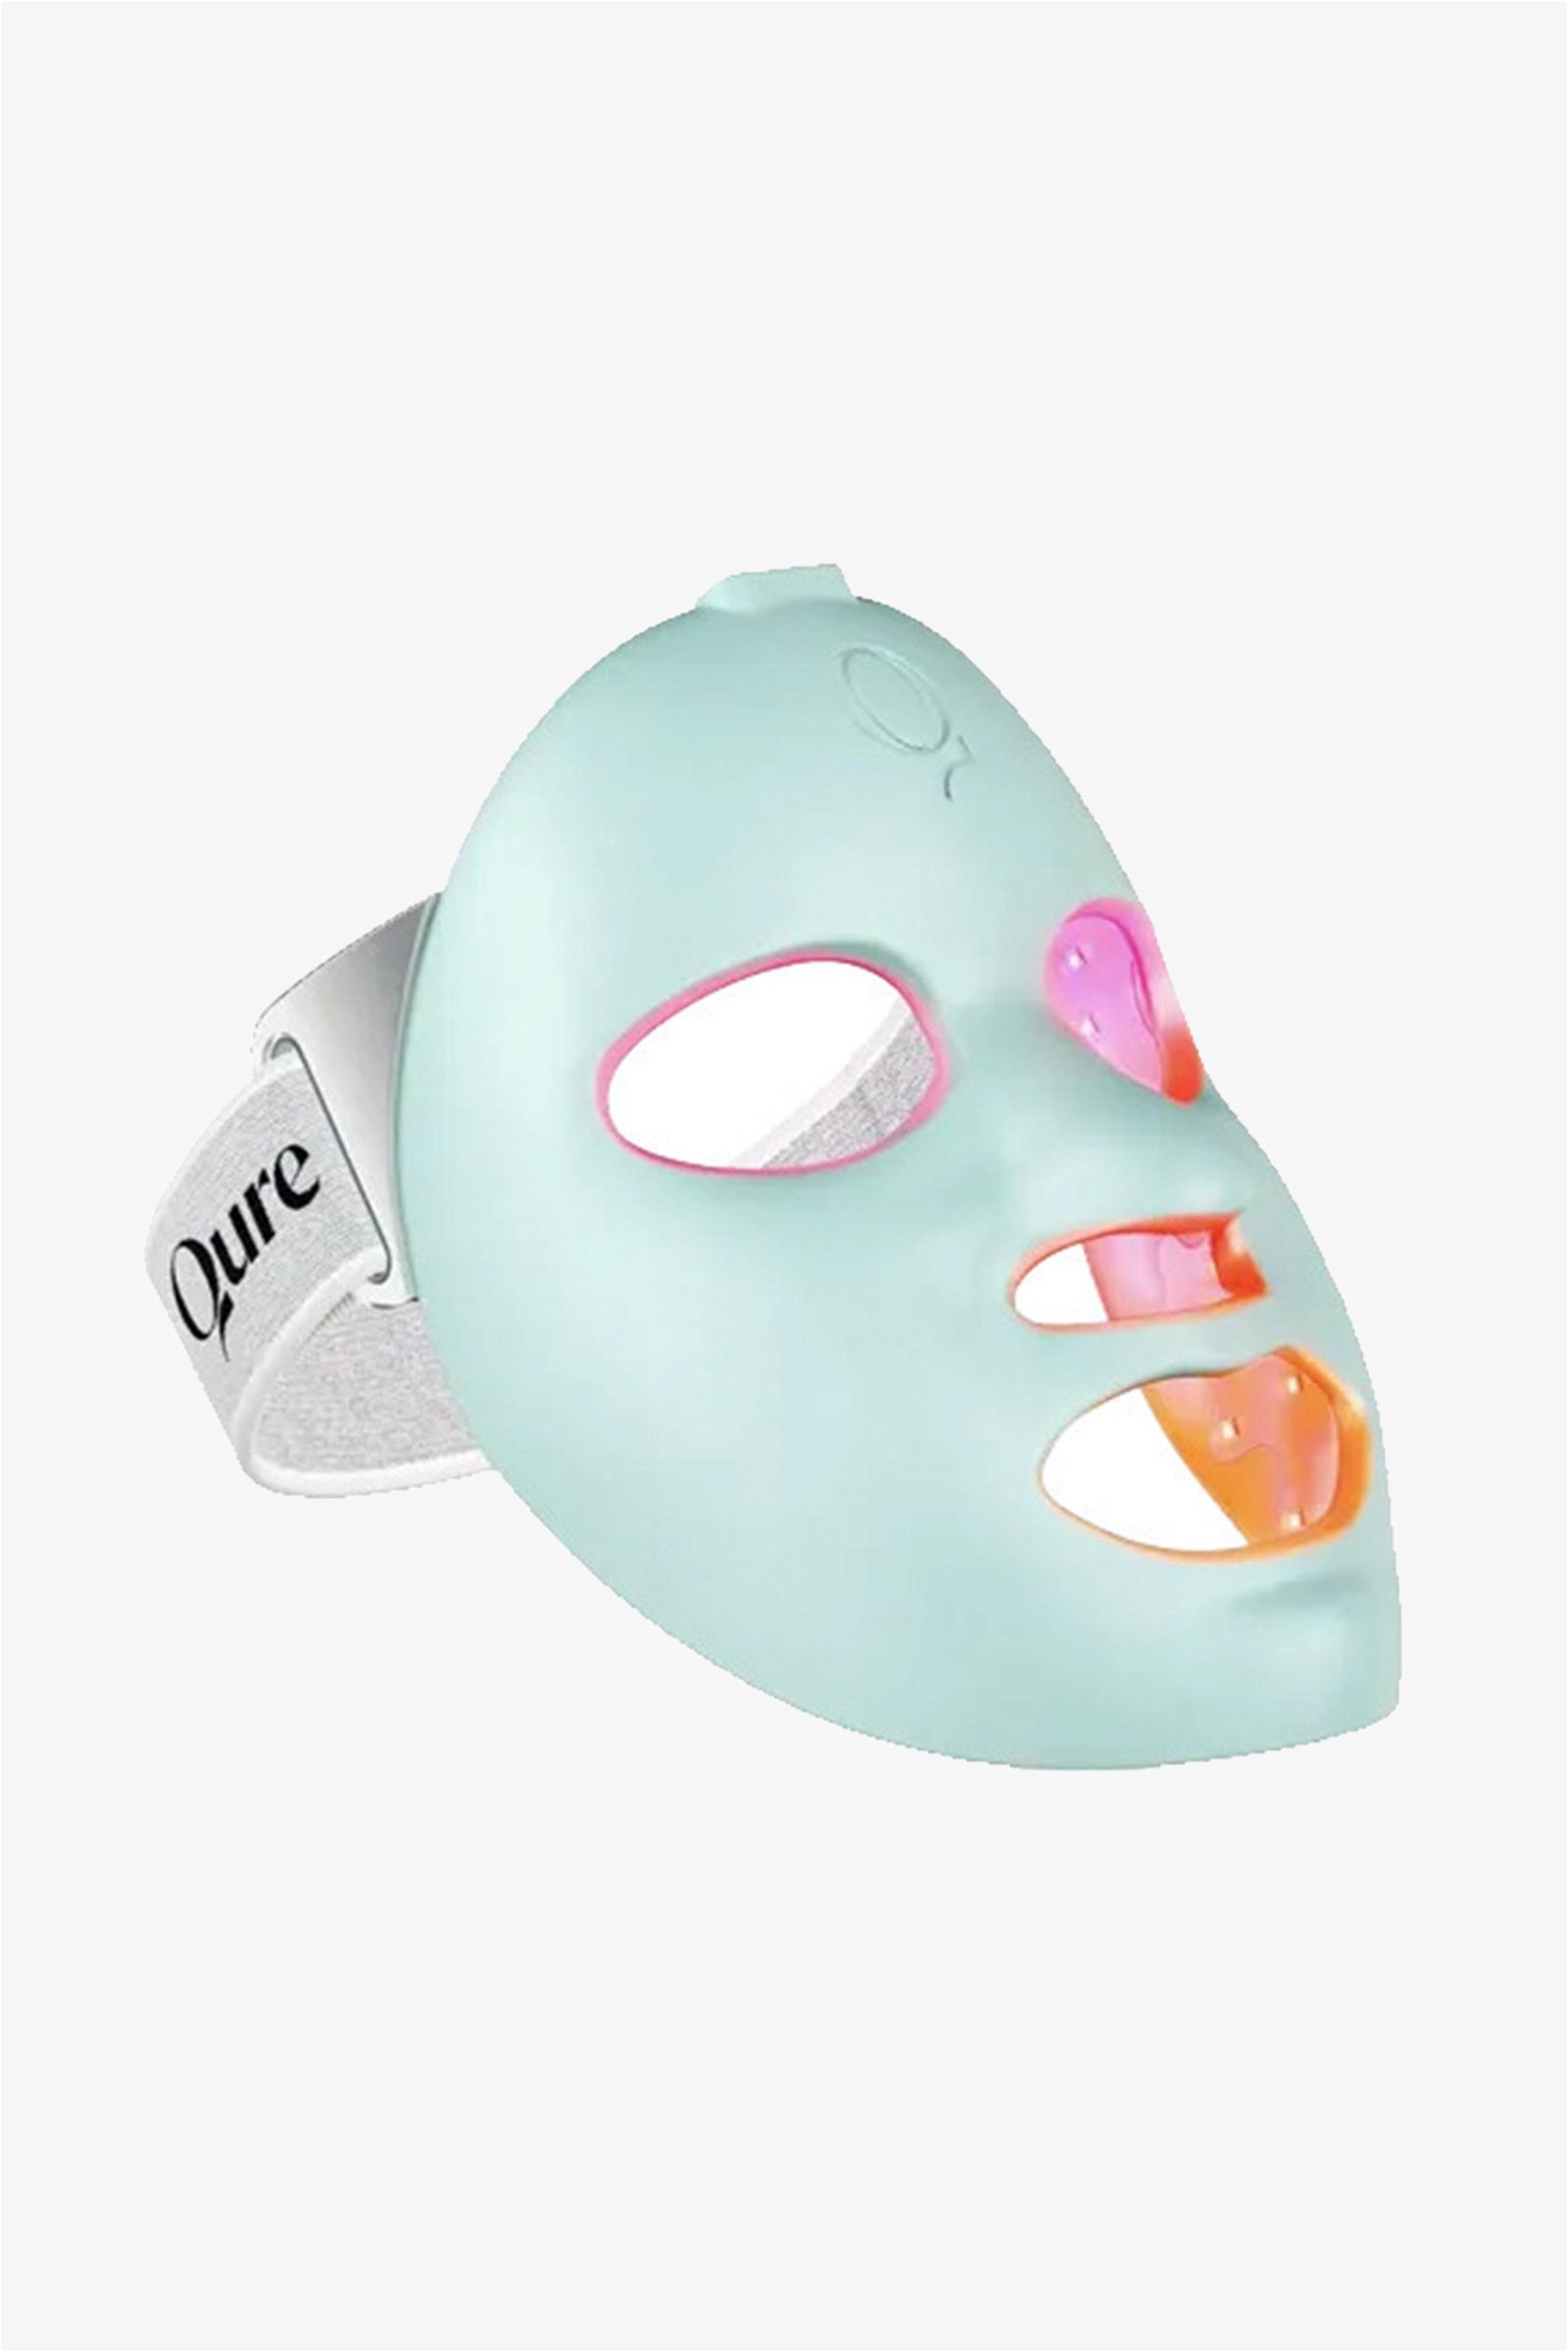 Q-Rejuvalight Pro LED Therapy Mask